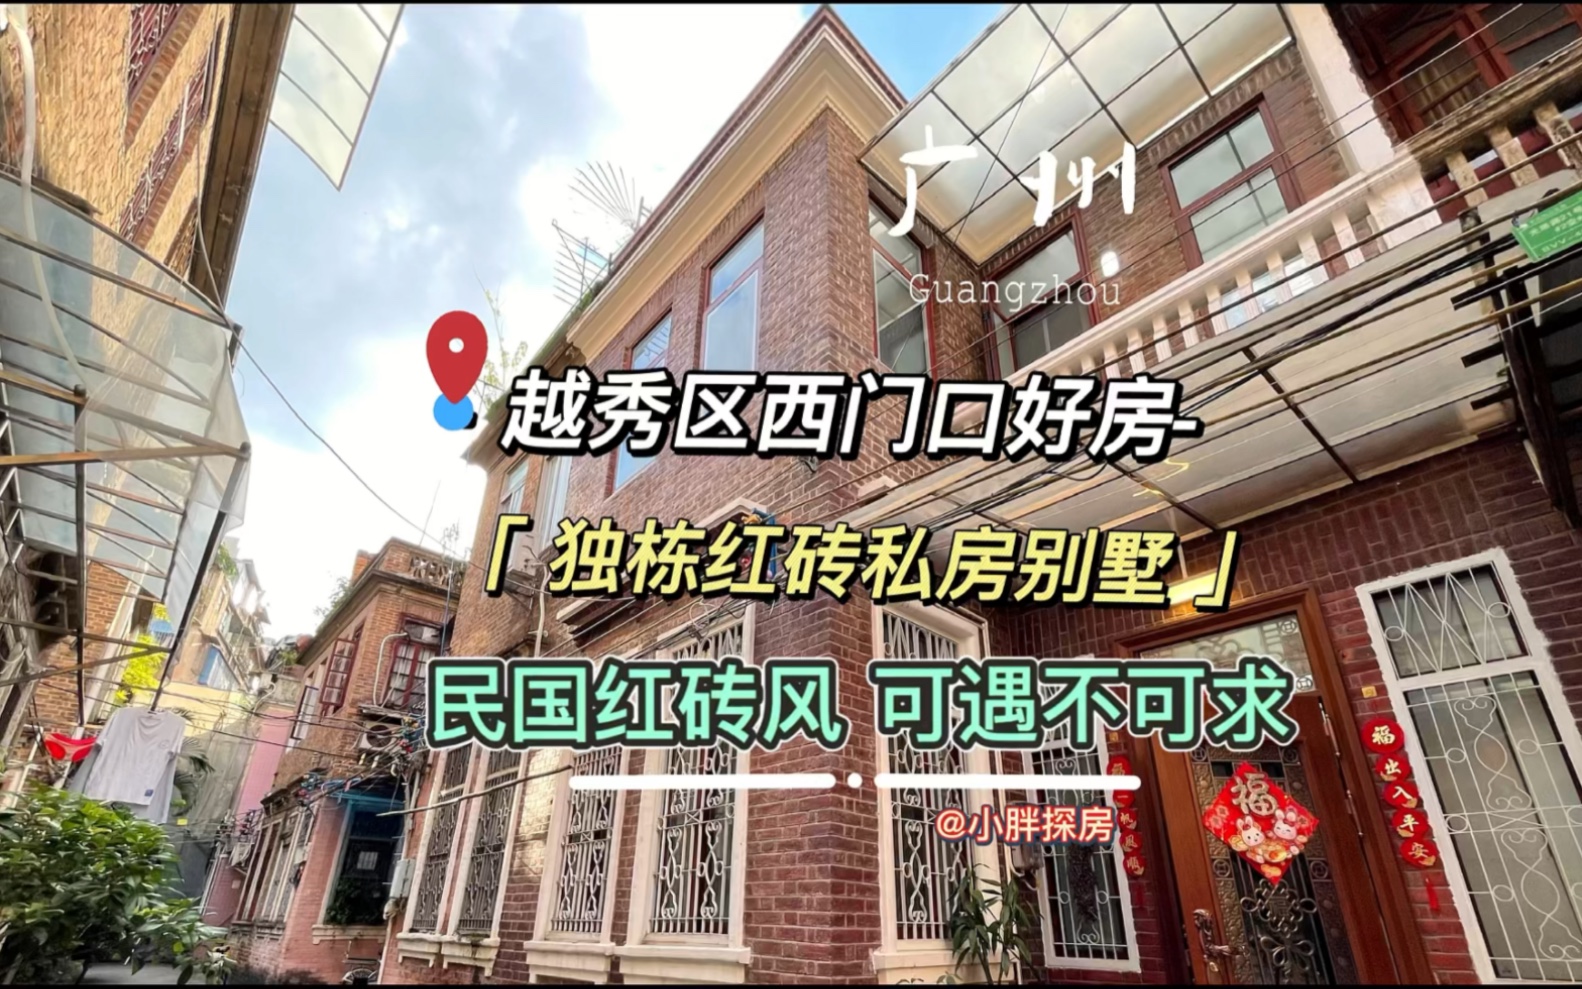 可遇不可求的民国时期独栋红砖私房别墅#好房推荐 #广州房产 #买房 #广州买房 #私房